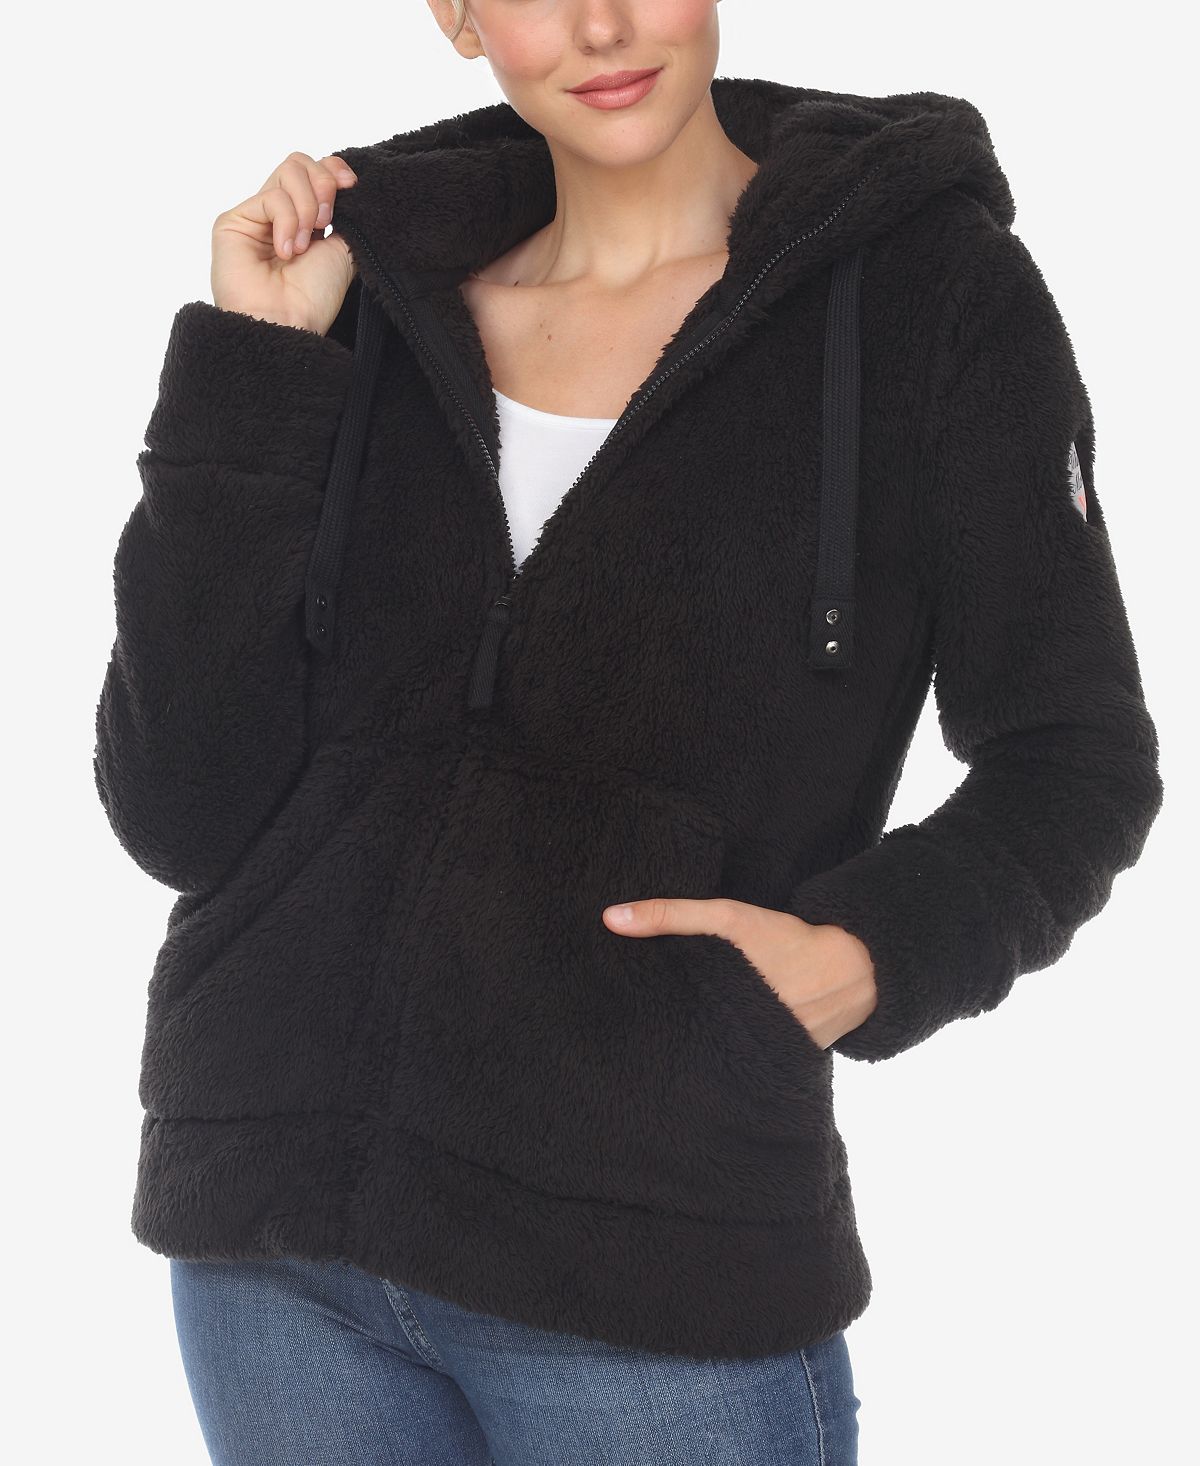 женское пальто из шерпы с открытым передом и капюшоном white mark Женская куртка из шерпы с капюшоном White Mark, черный